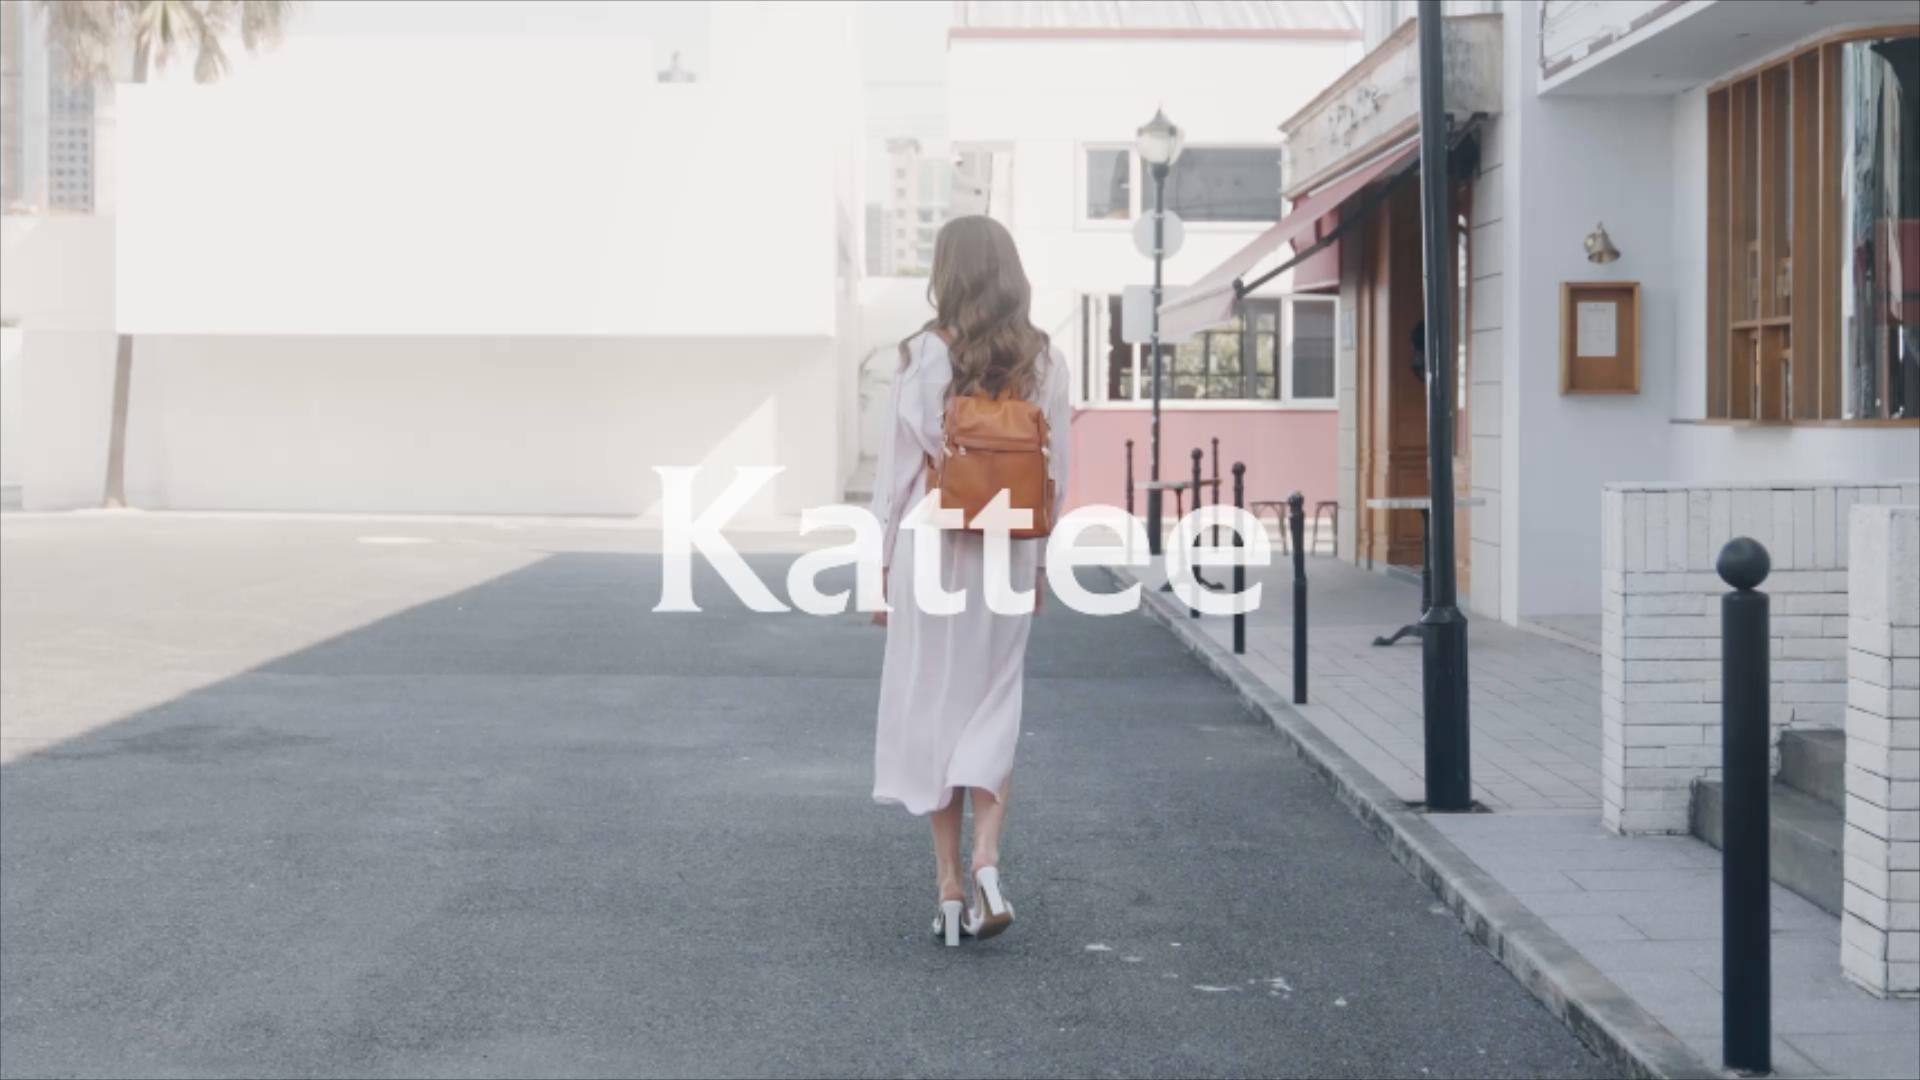 Load video: kattee bags brand video